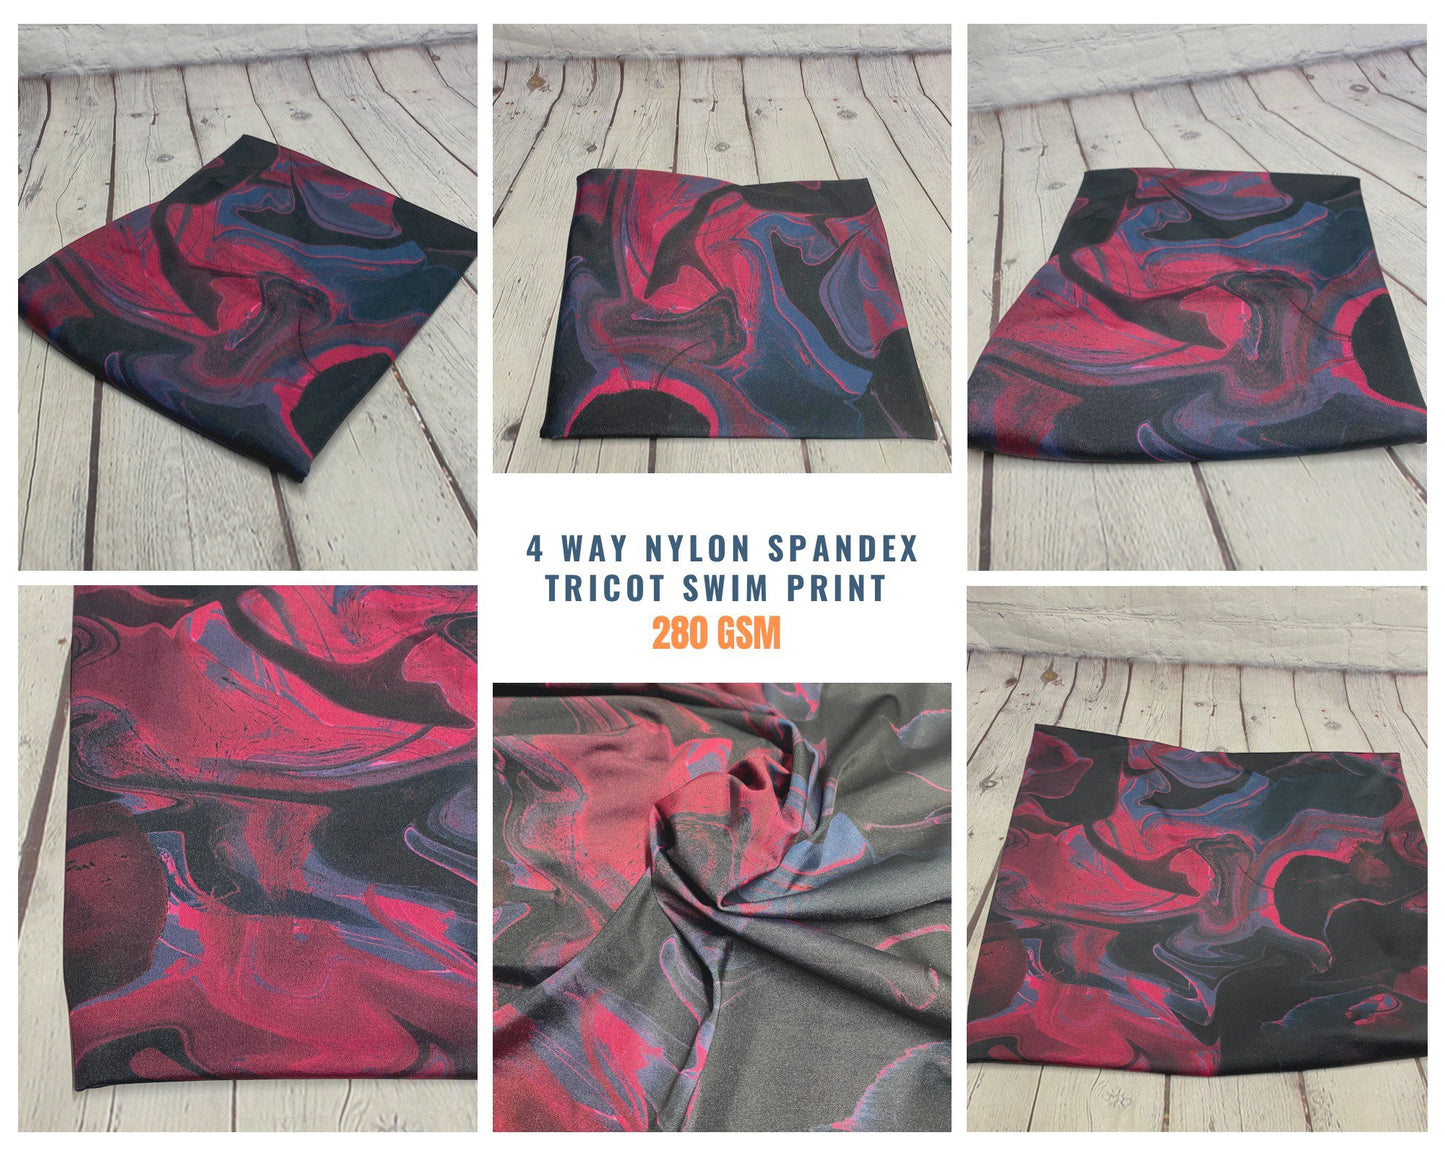 4 Way Stretch Print Nylon Spandex Fabric By The Yard Tricot Swim Wear Bikini Active Wear Marble Wave Tie Dye Wine Navy 280 GSM